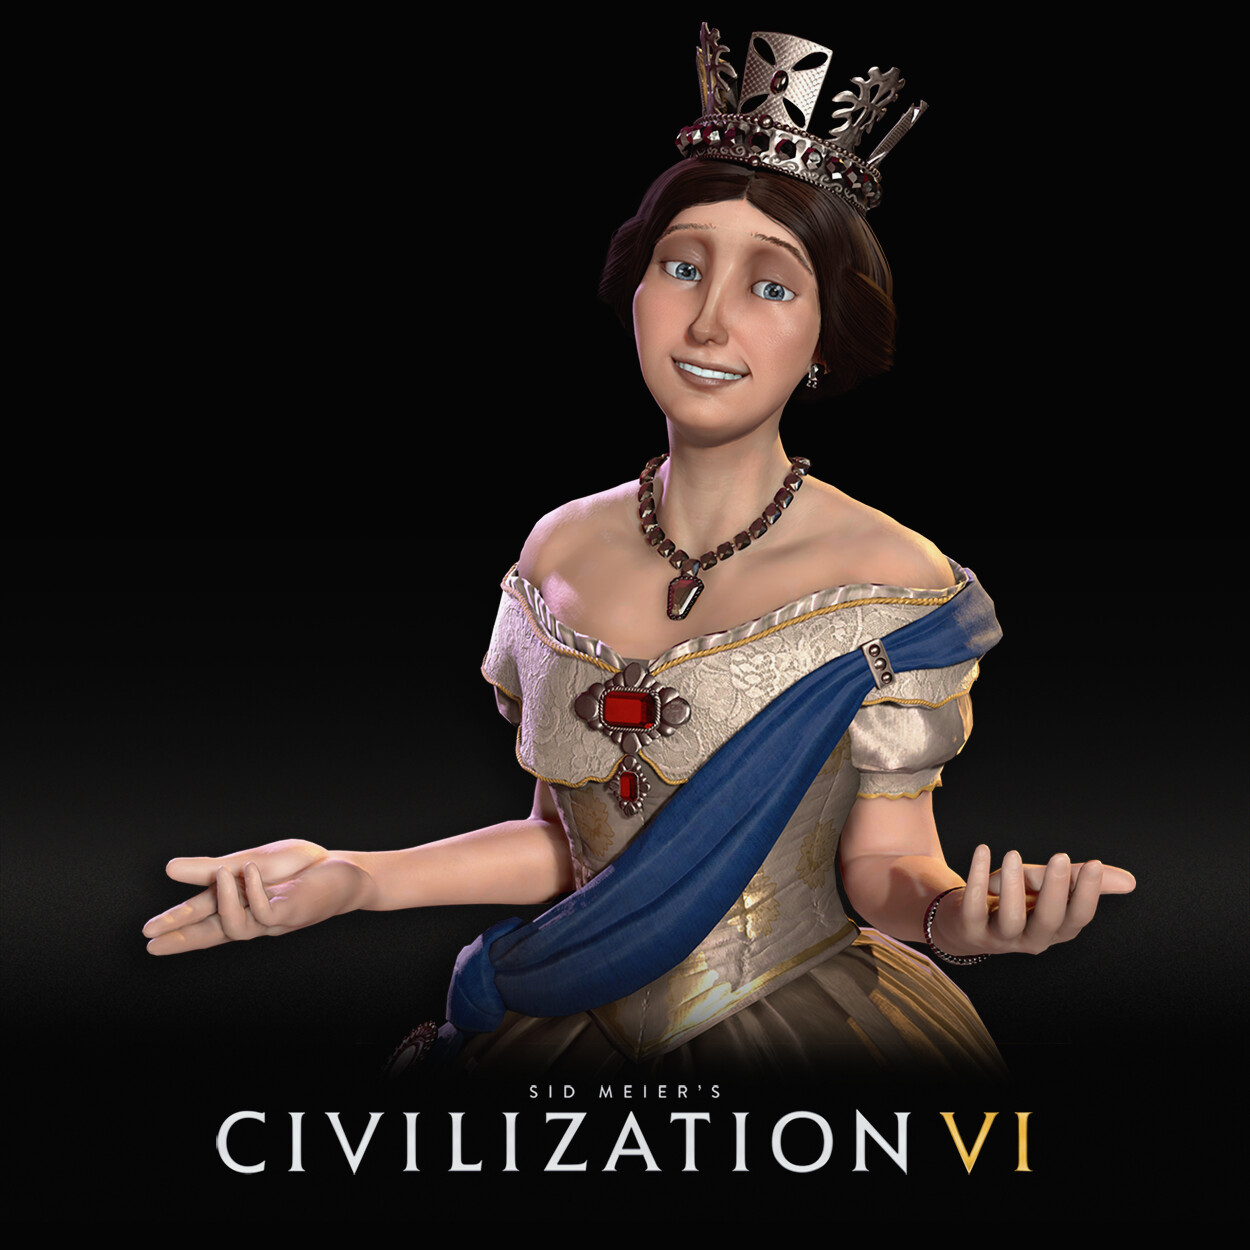 Civilization VI: Victoria II of England